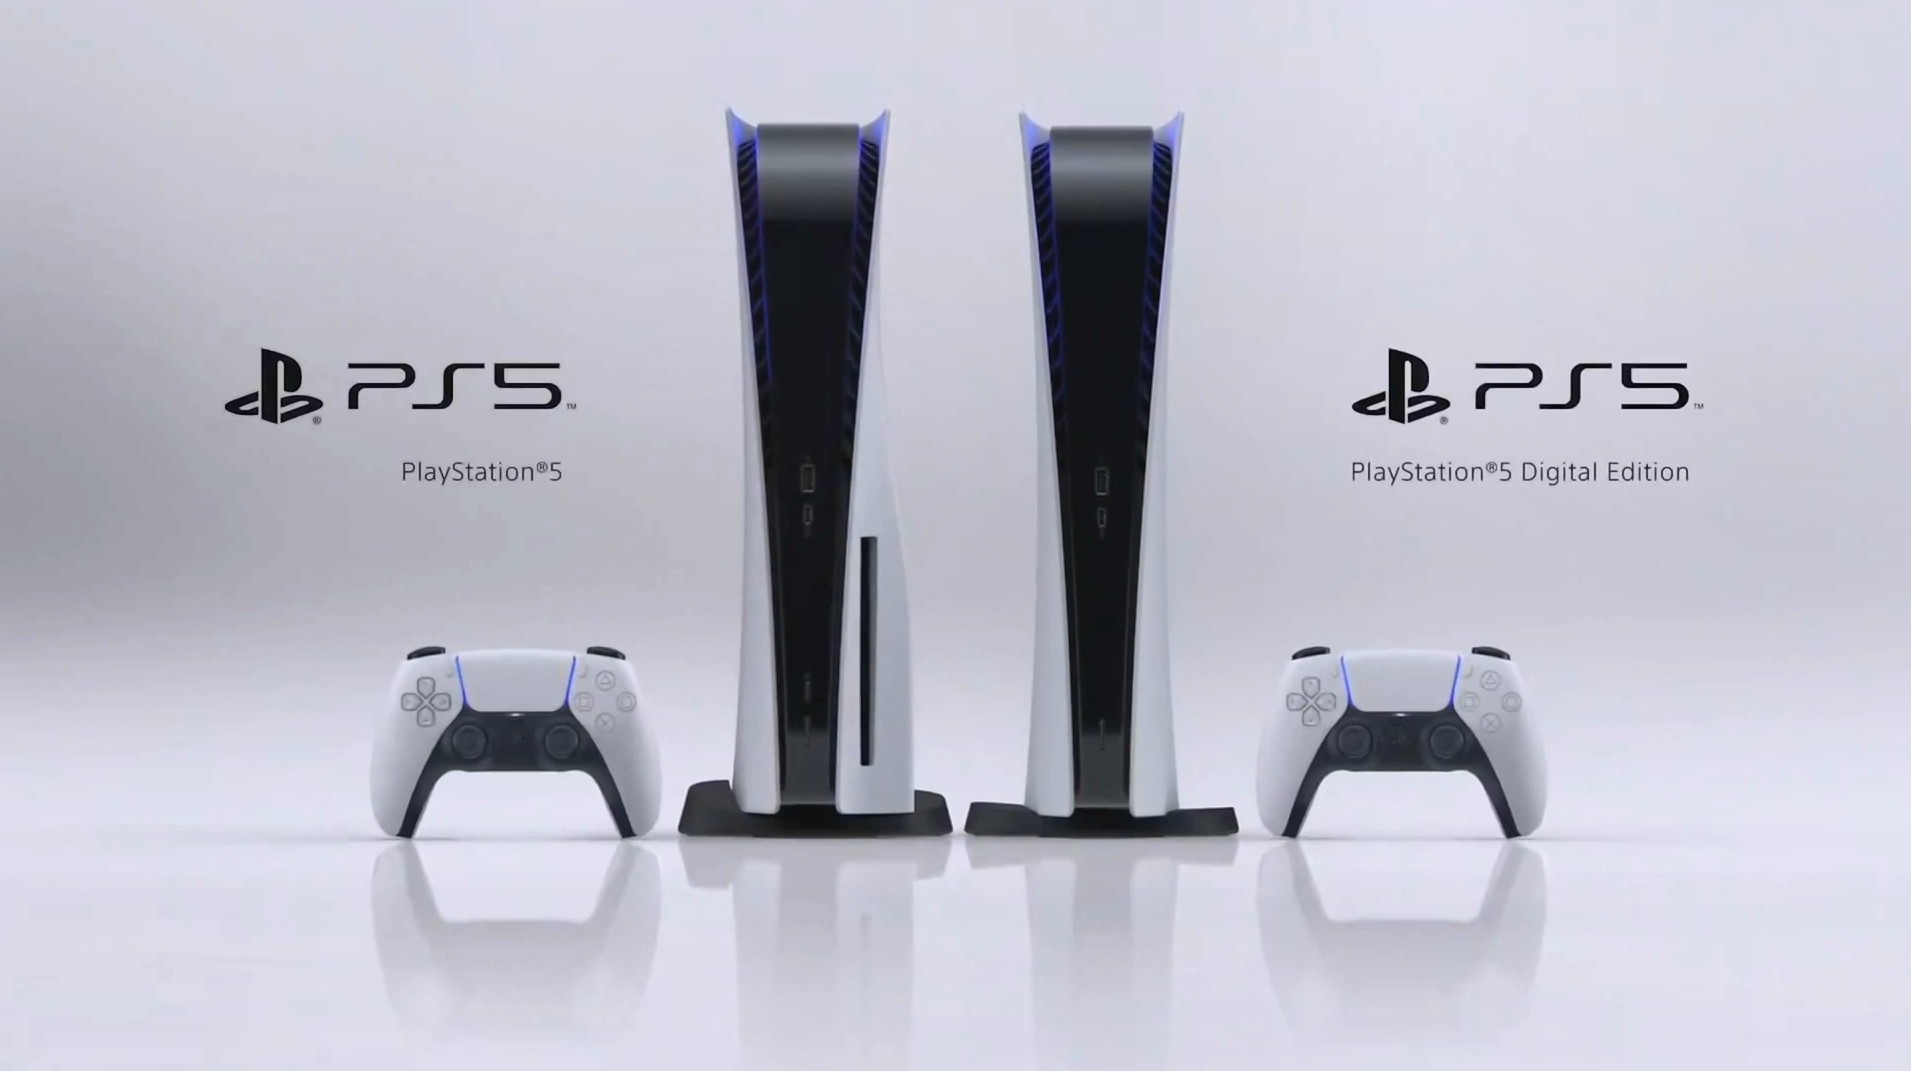 Detalls de preus filtrats Suggeriu que PlayStation 5 comenci a 399 euros